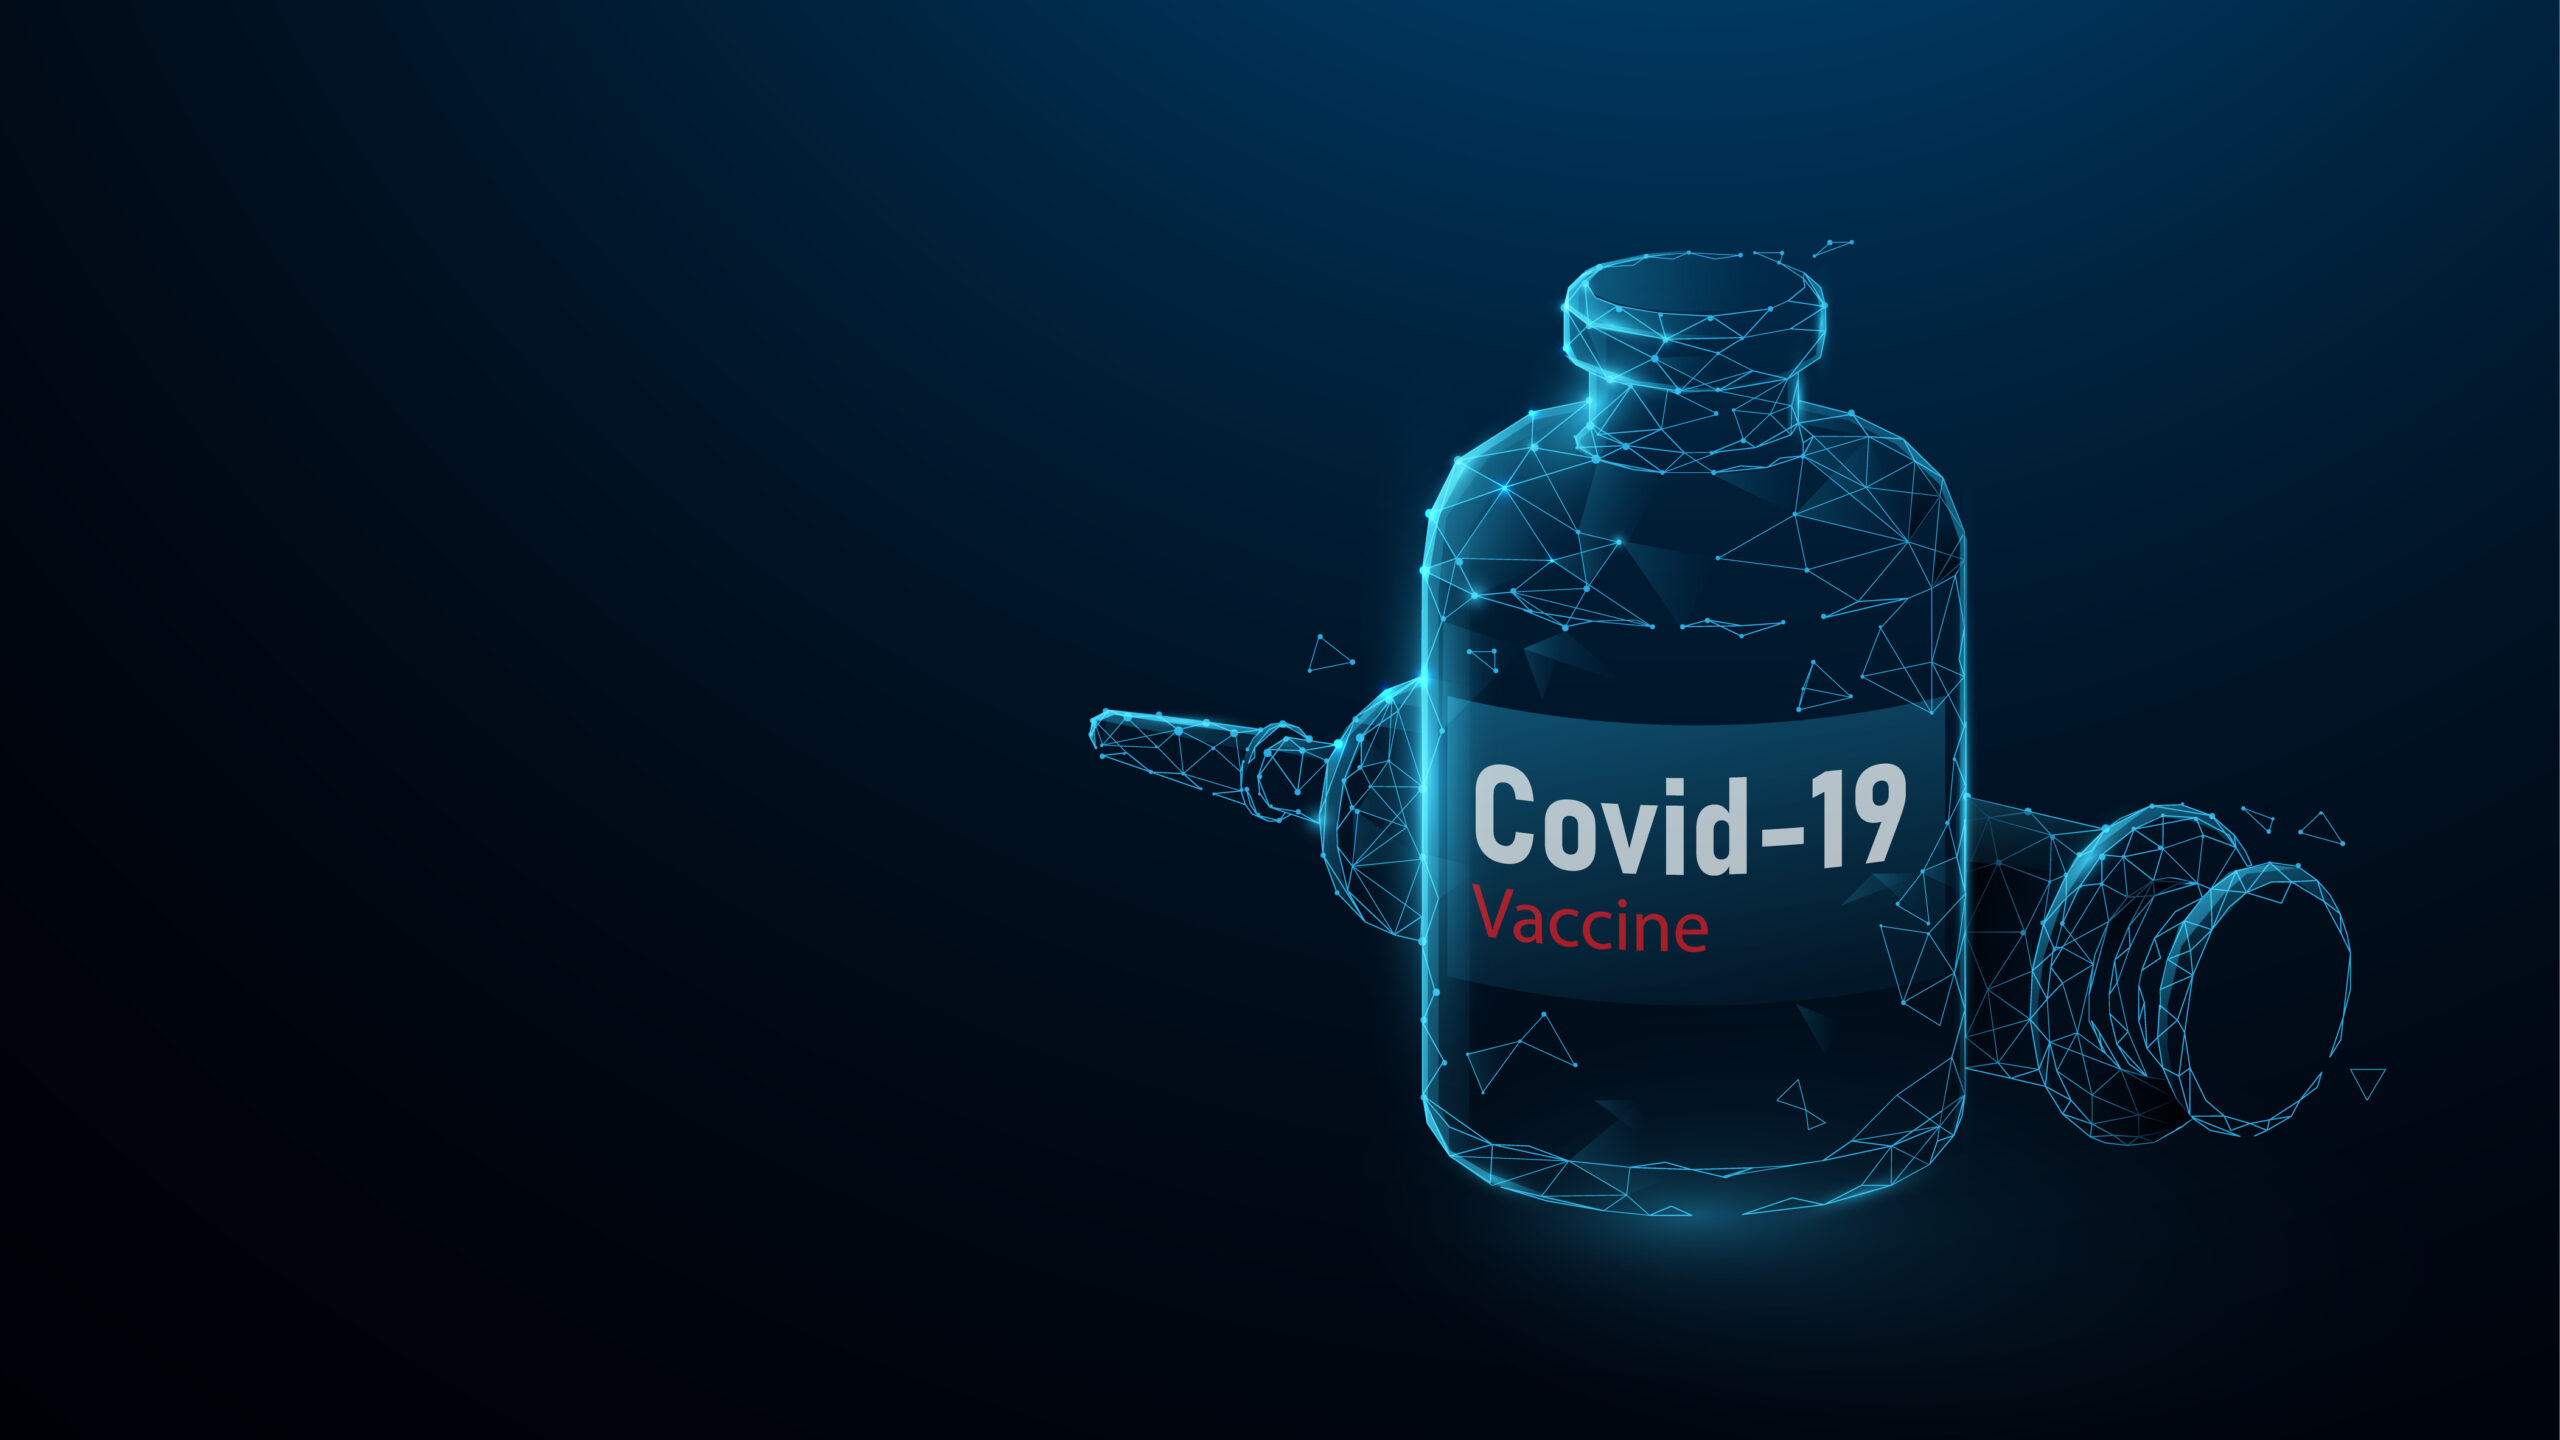 Covid 19 vaccine